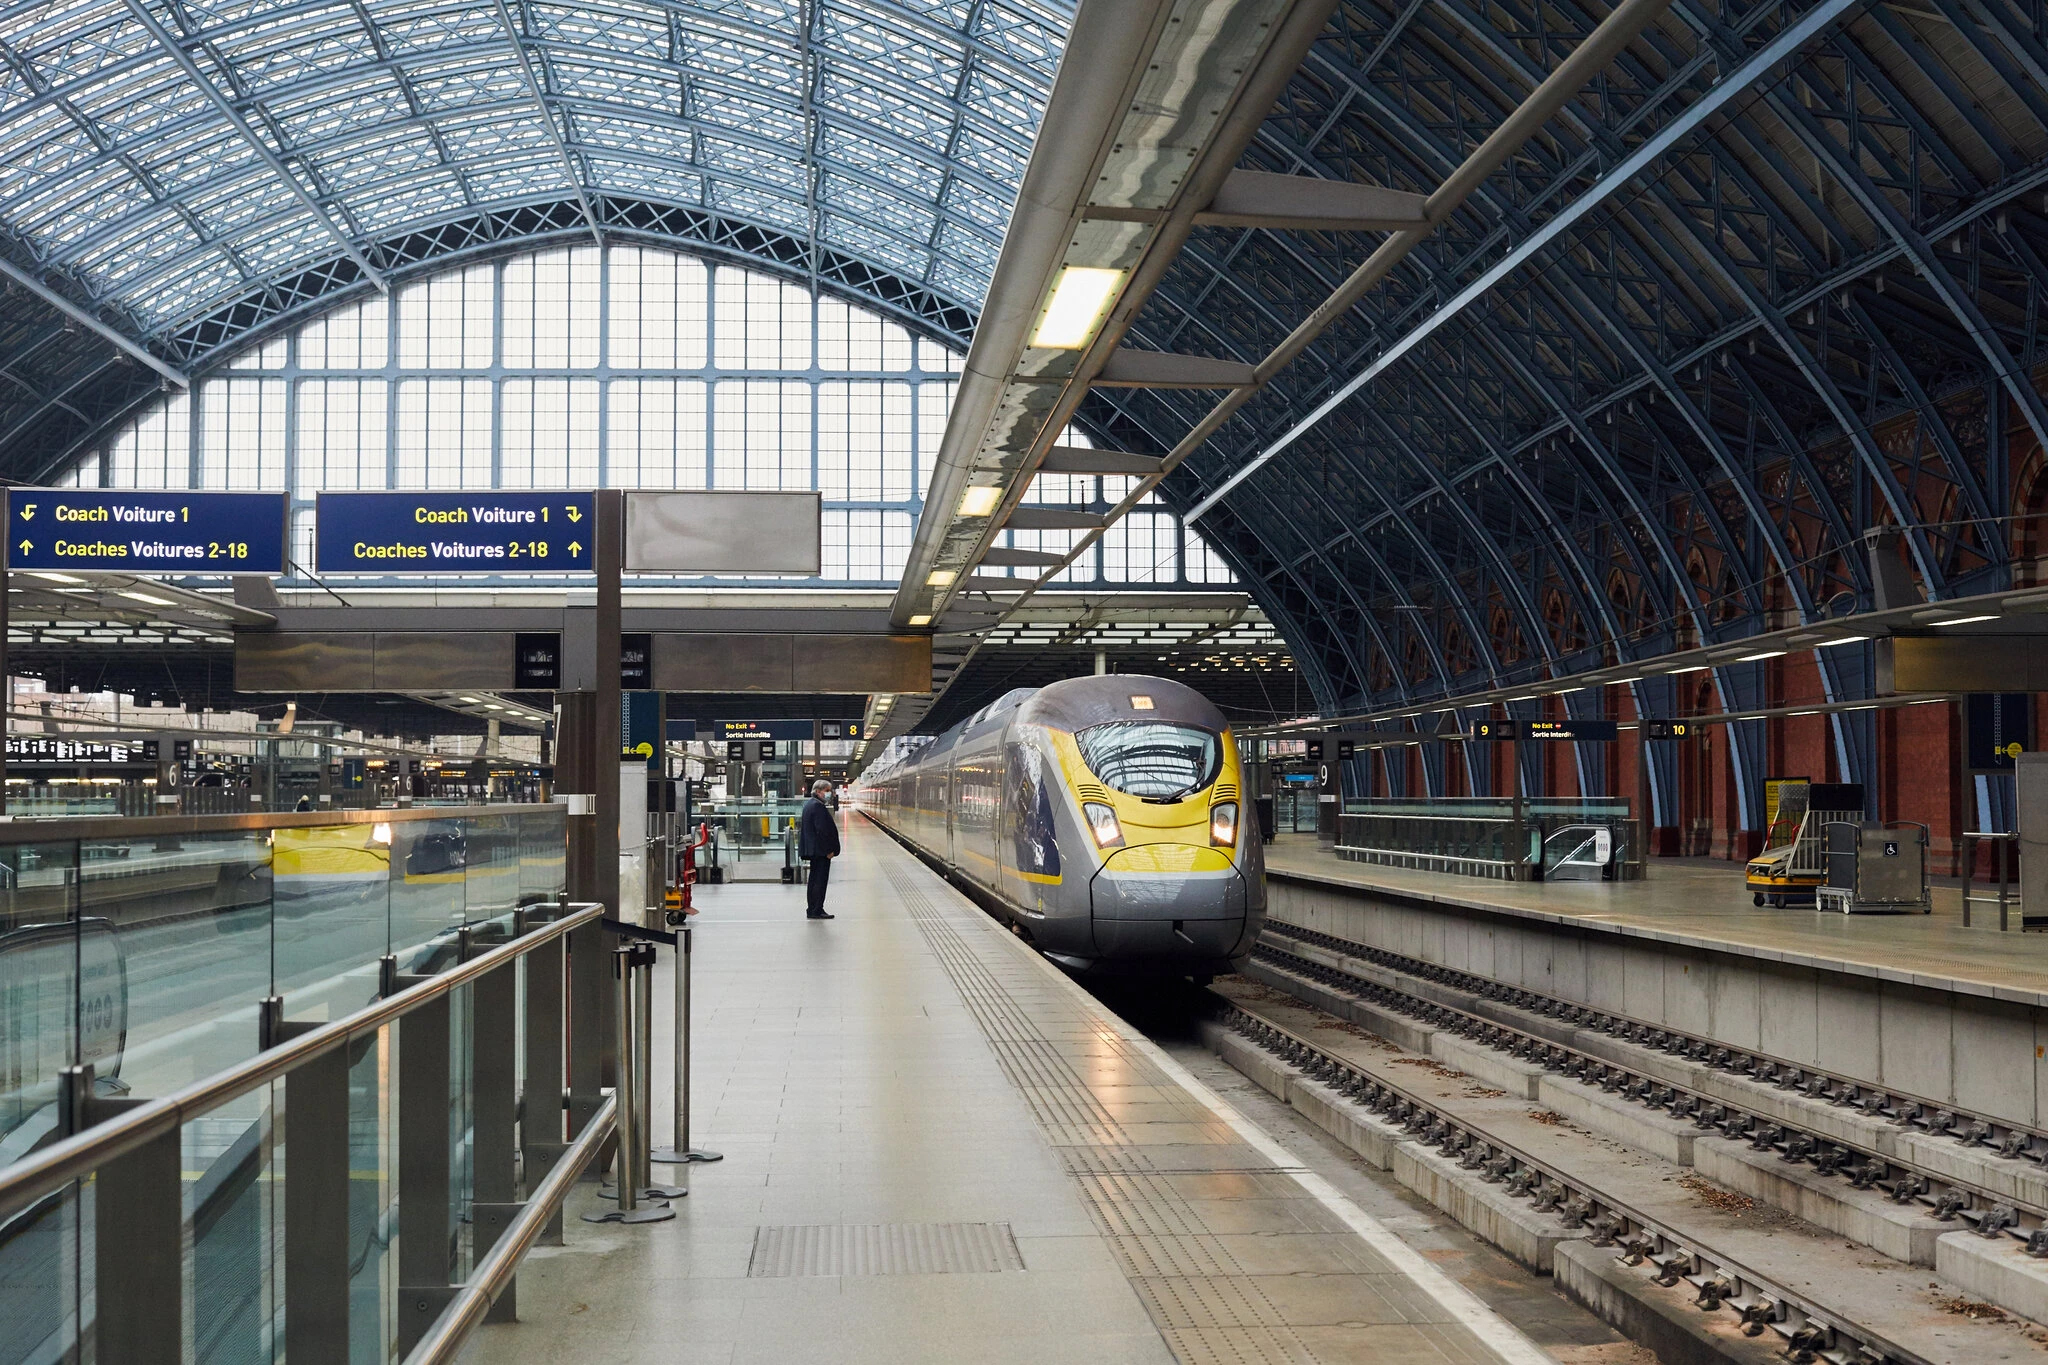 Một chuyến tàu Eurostar từ Paris tới nhà ga quốc tế St. Pancras ở London, một nửa số ghế trên tàu bị bỏ trống - Ảnh The New York Times